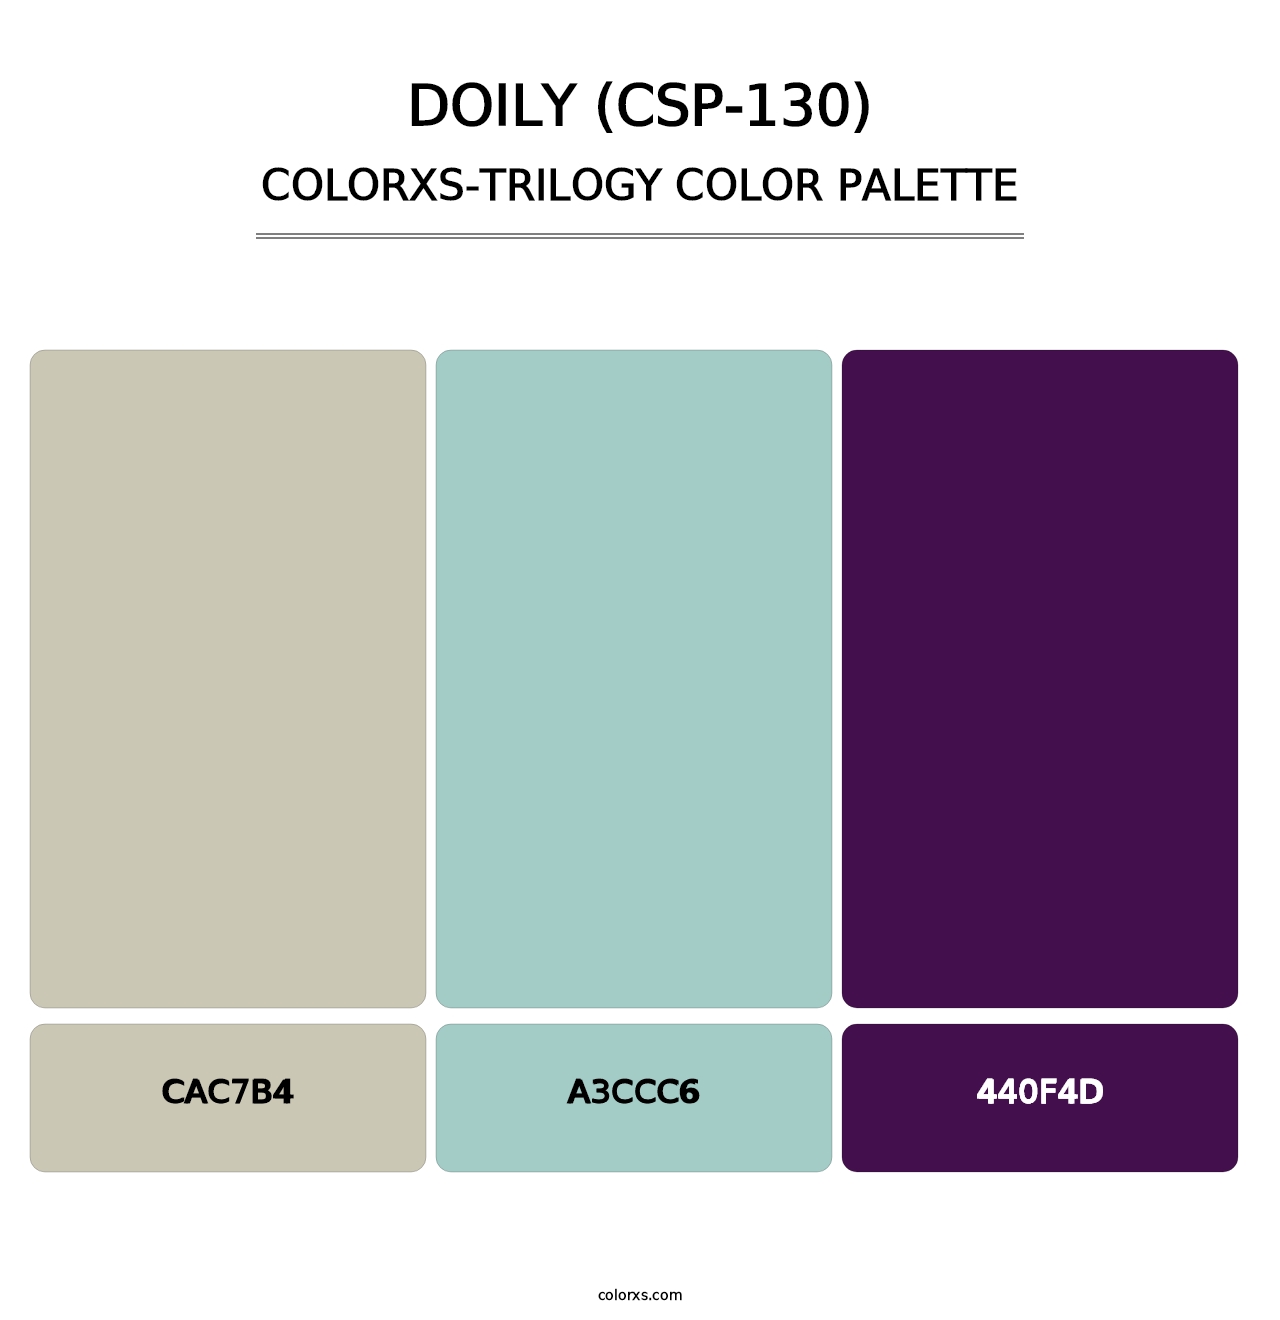 Doily (CSP-130) - Colorxs Trilogy Palette